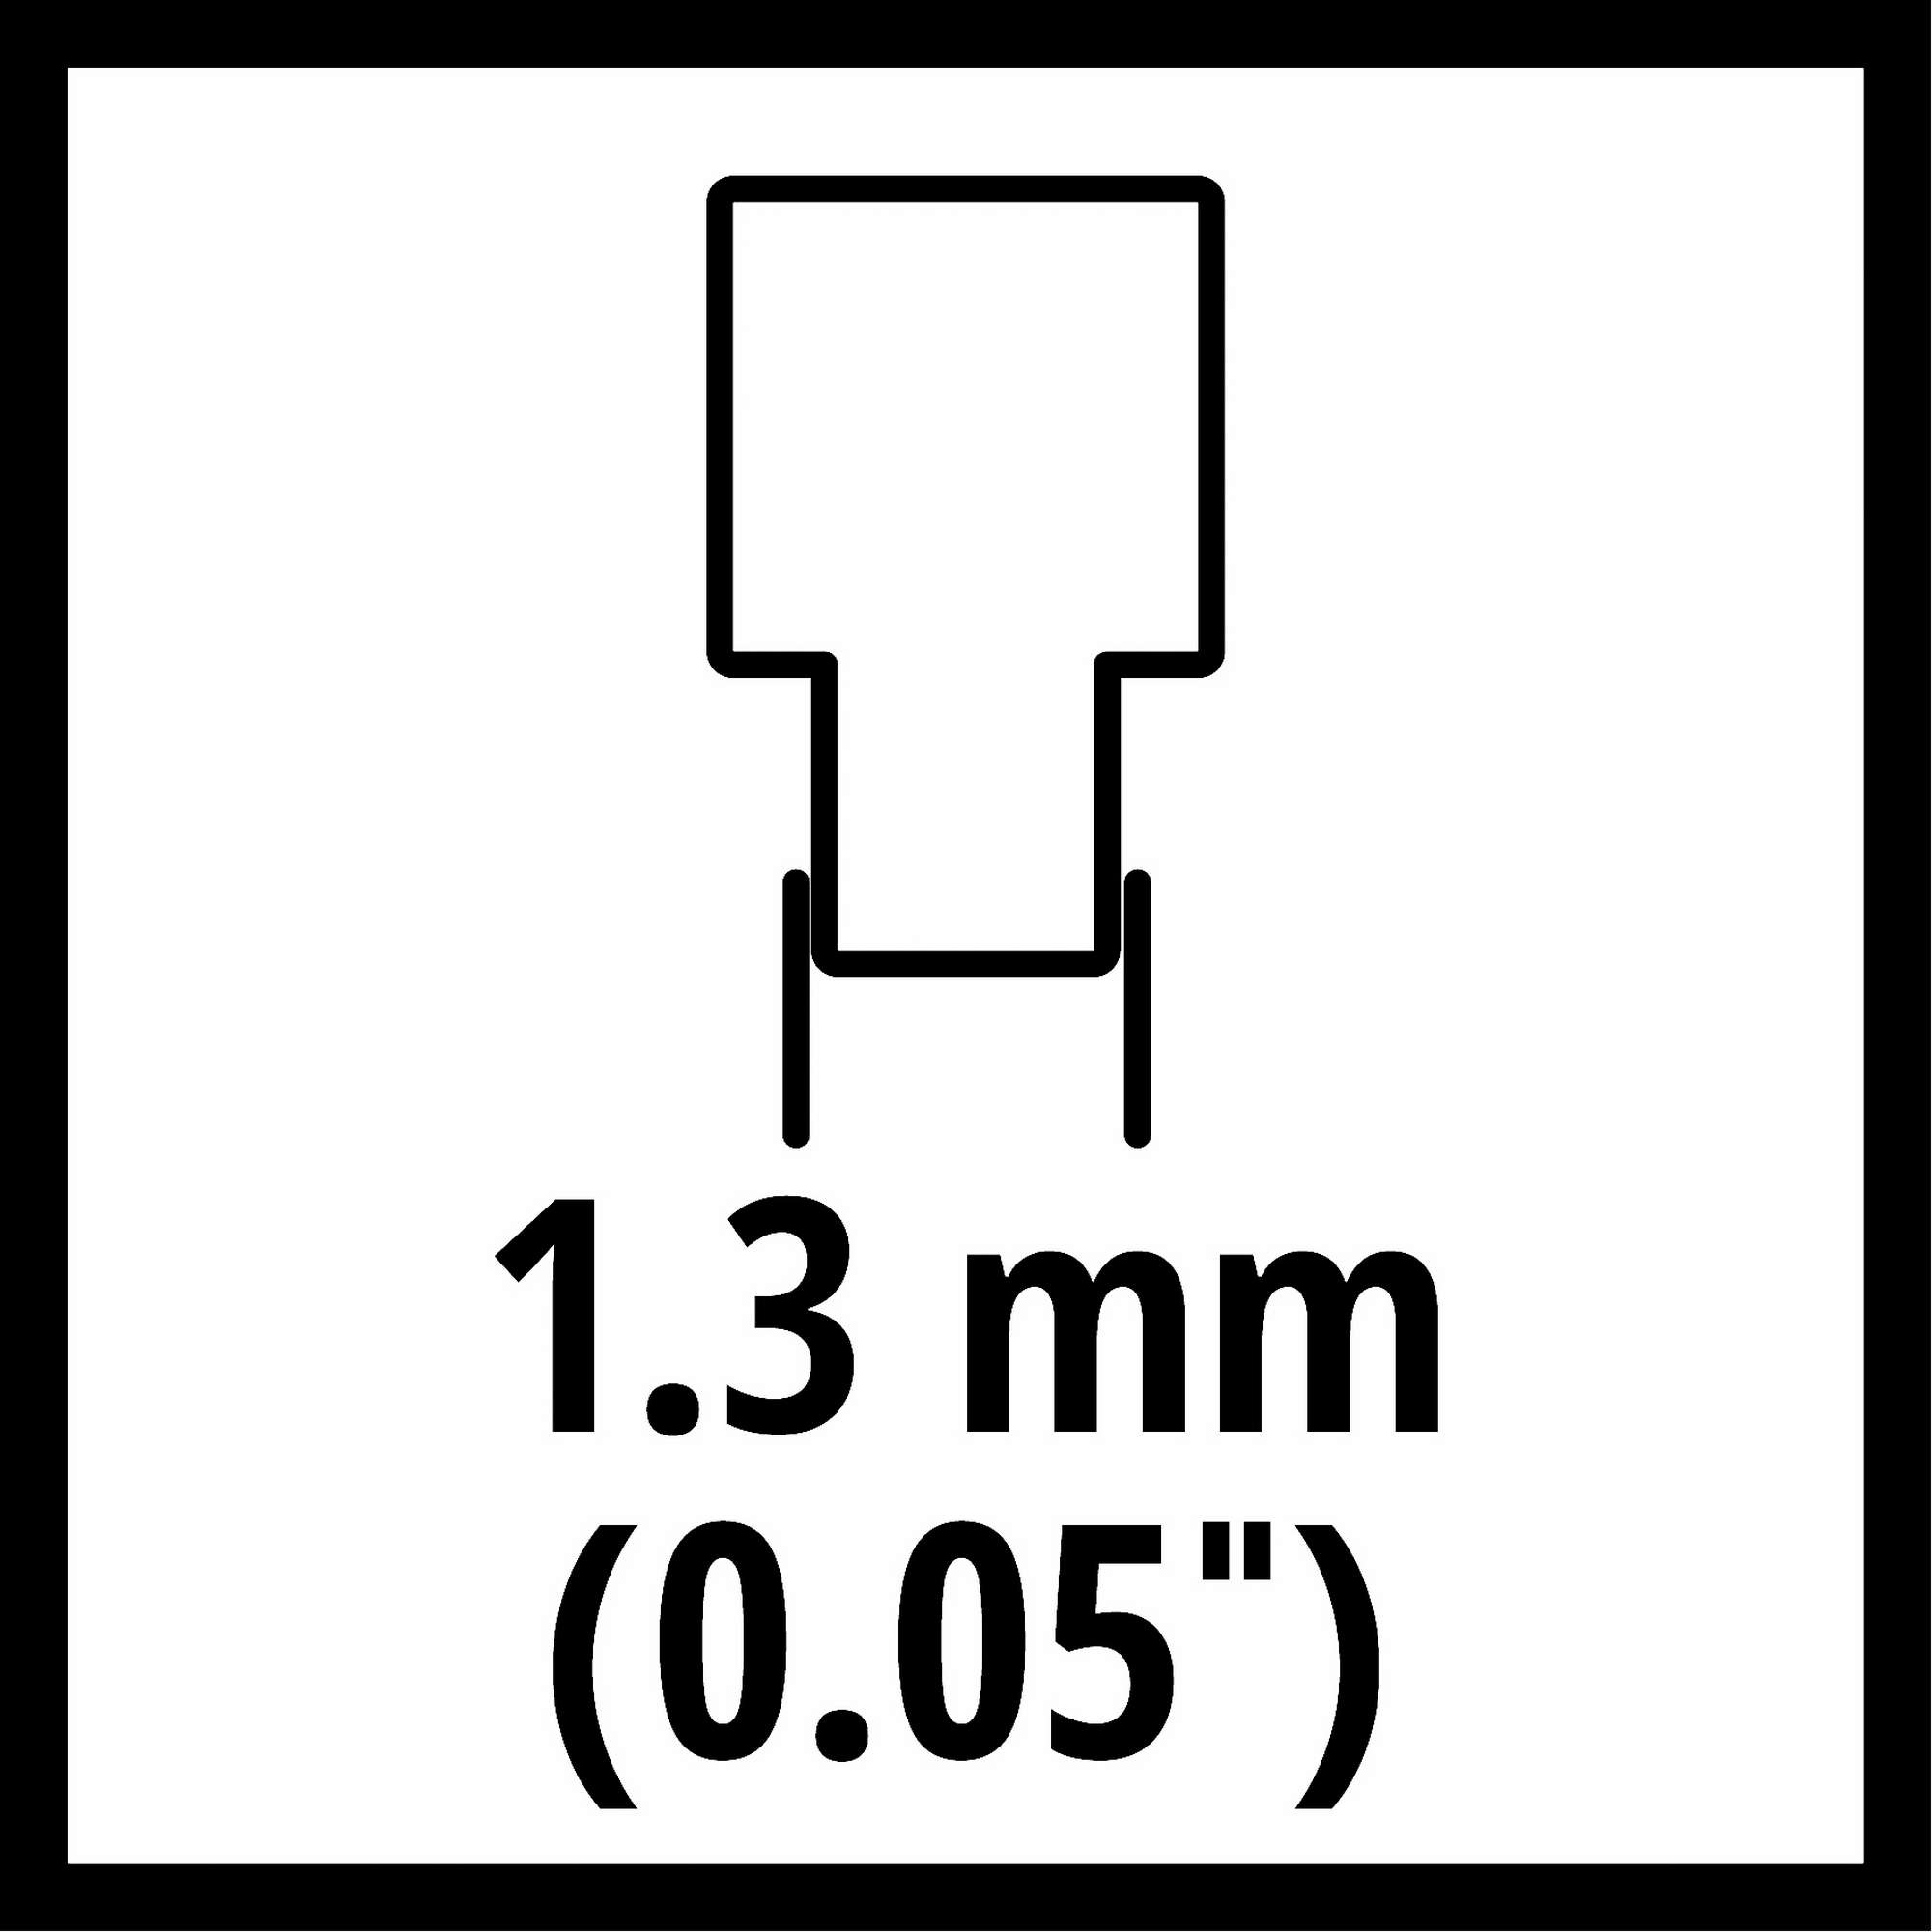 Kettensäge-Ersatzkette 35 cm 1,3 52T 3/8" + product picture